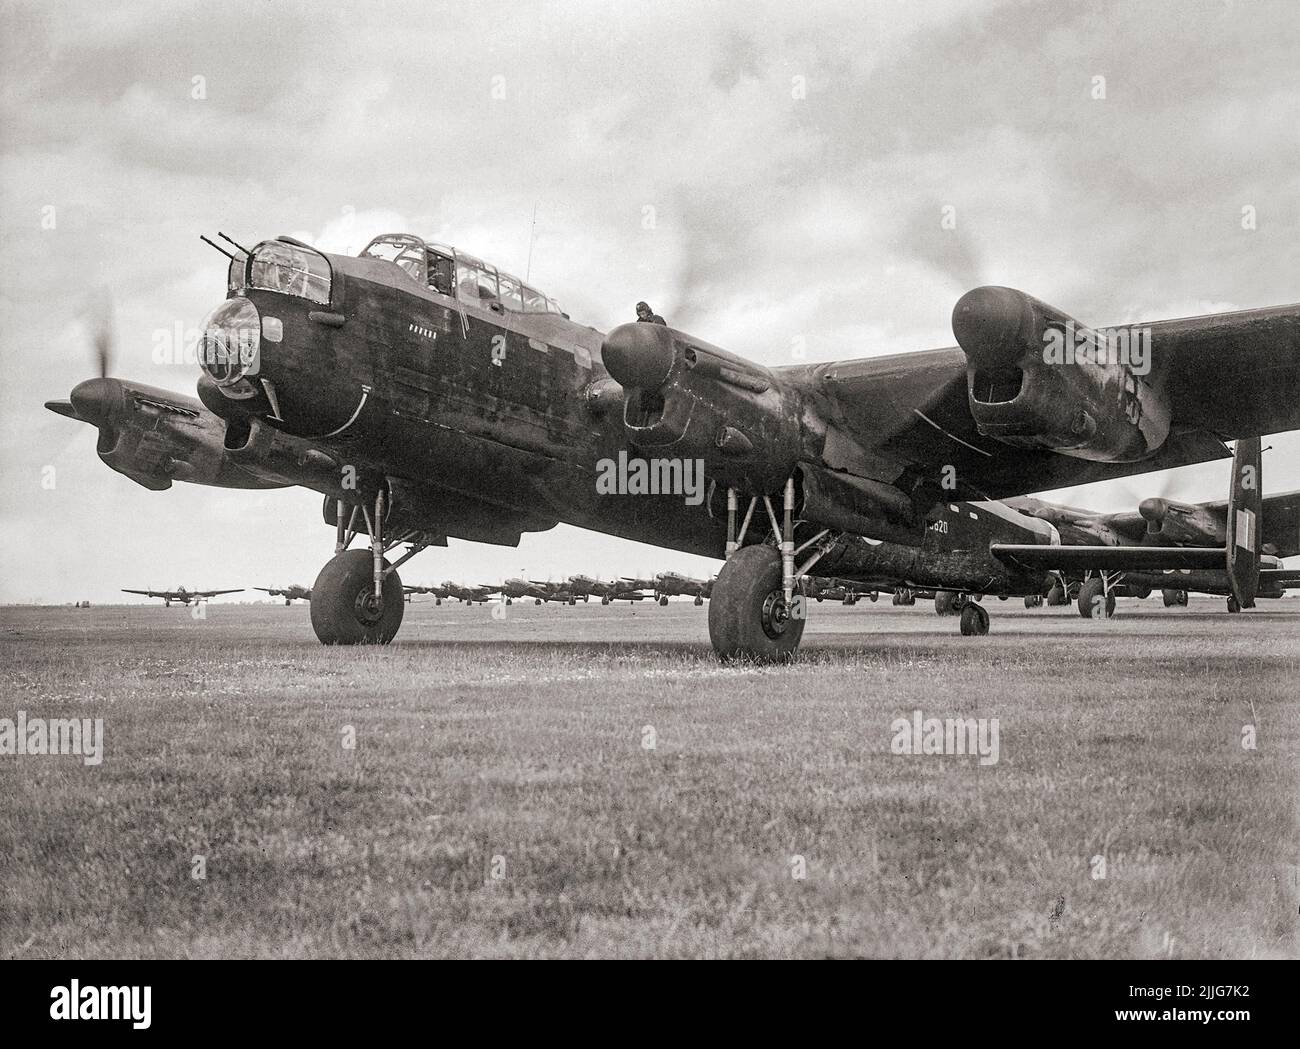 Avro Lancaster B Mark I, R5620 von No. 83 Squadron RAF, führt die Warteschlange der Flugzeuge an, die darauf warten, von Scampton, Lincolnshire, beim 'Thousand-Bomber'-Angriff nach Bremen, Deutschland, abzuheben. Dieser britische viermotorige schwere Bomber war das einzige Flugzeug, das in dieser Nacht vom Geschwader verloren ging. Stockfoto